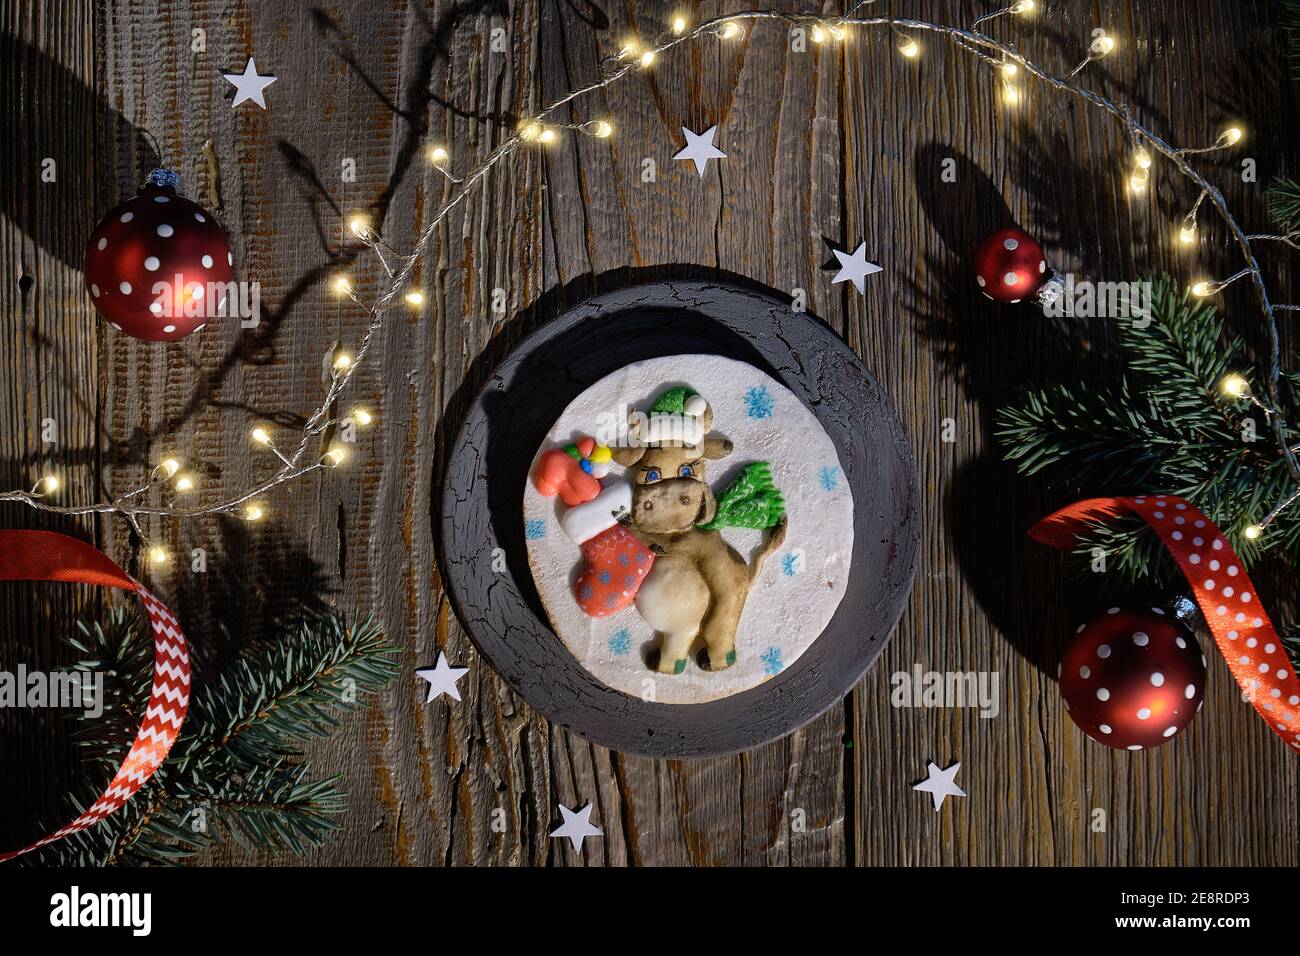 Verzierte Lebkuchen mit dummen lustige Kuh mit Weihnachten Socke voller Geschenke dekoriert. Weihnachtliche Wohnung mit Tannenzweigen, roten Kugeln und festlichen Lichtern Stockfoto